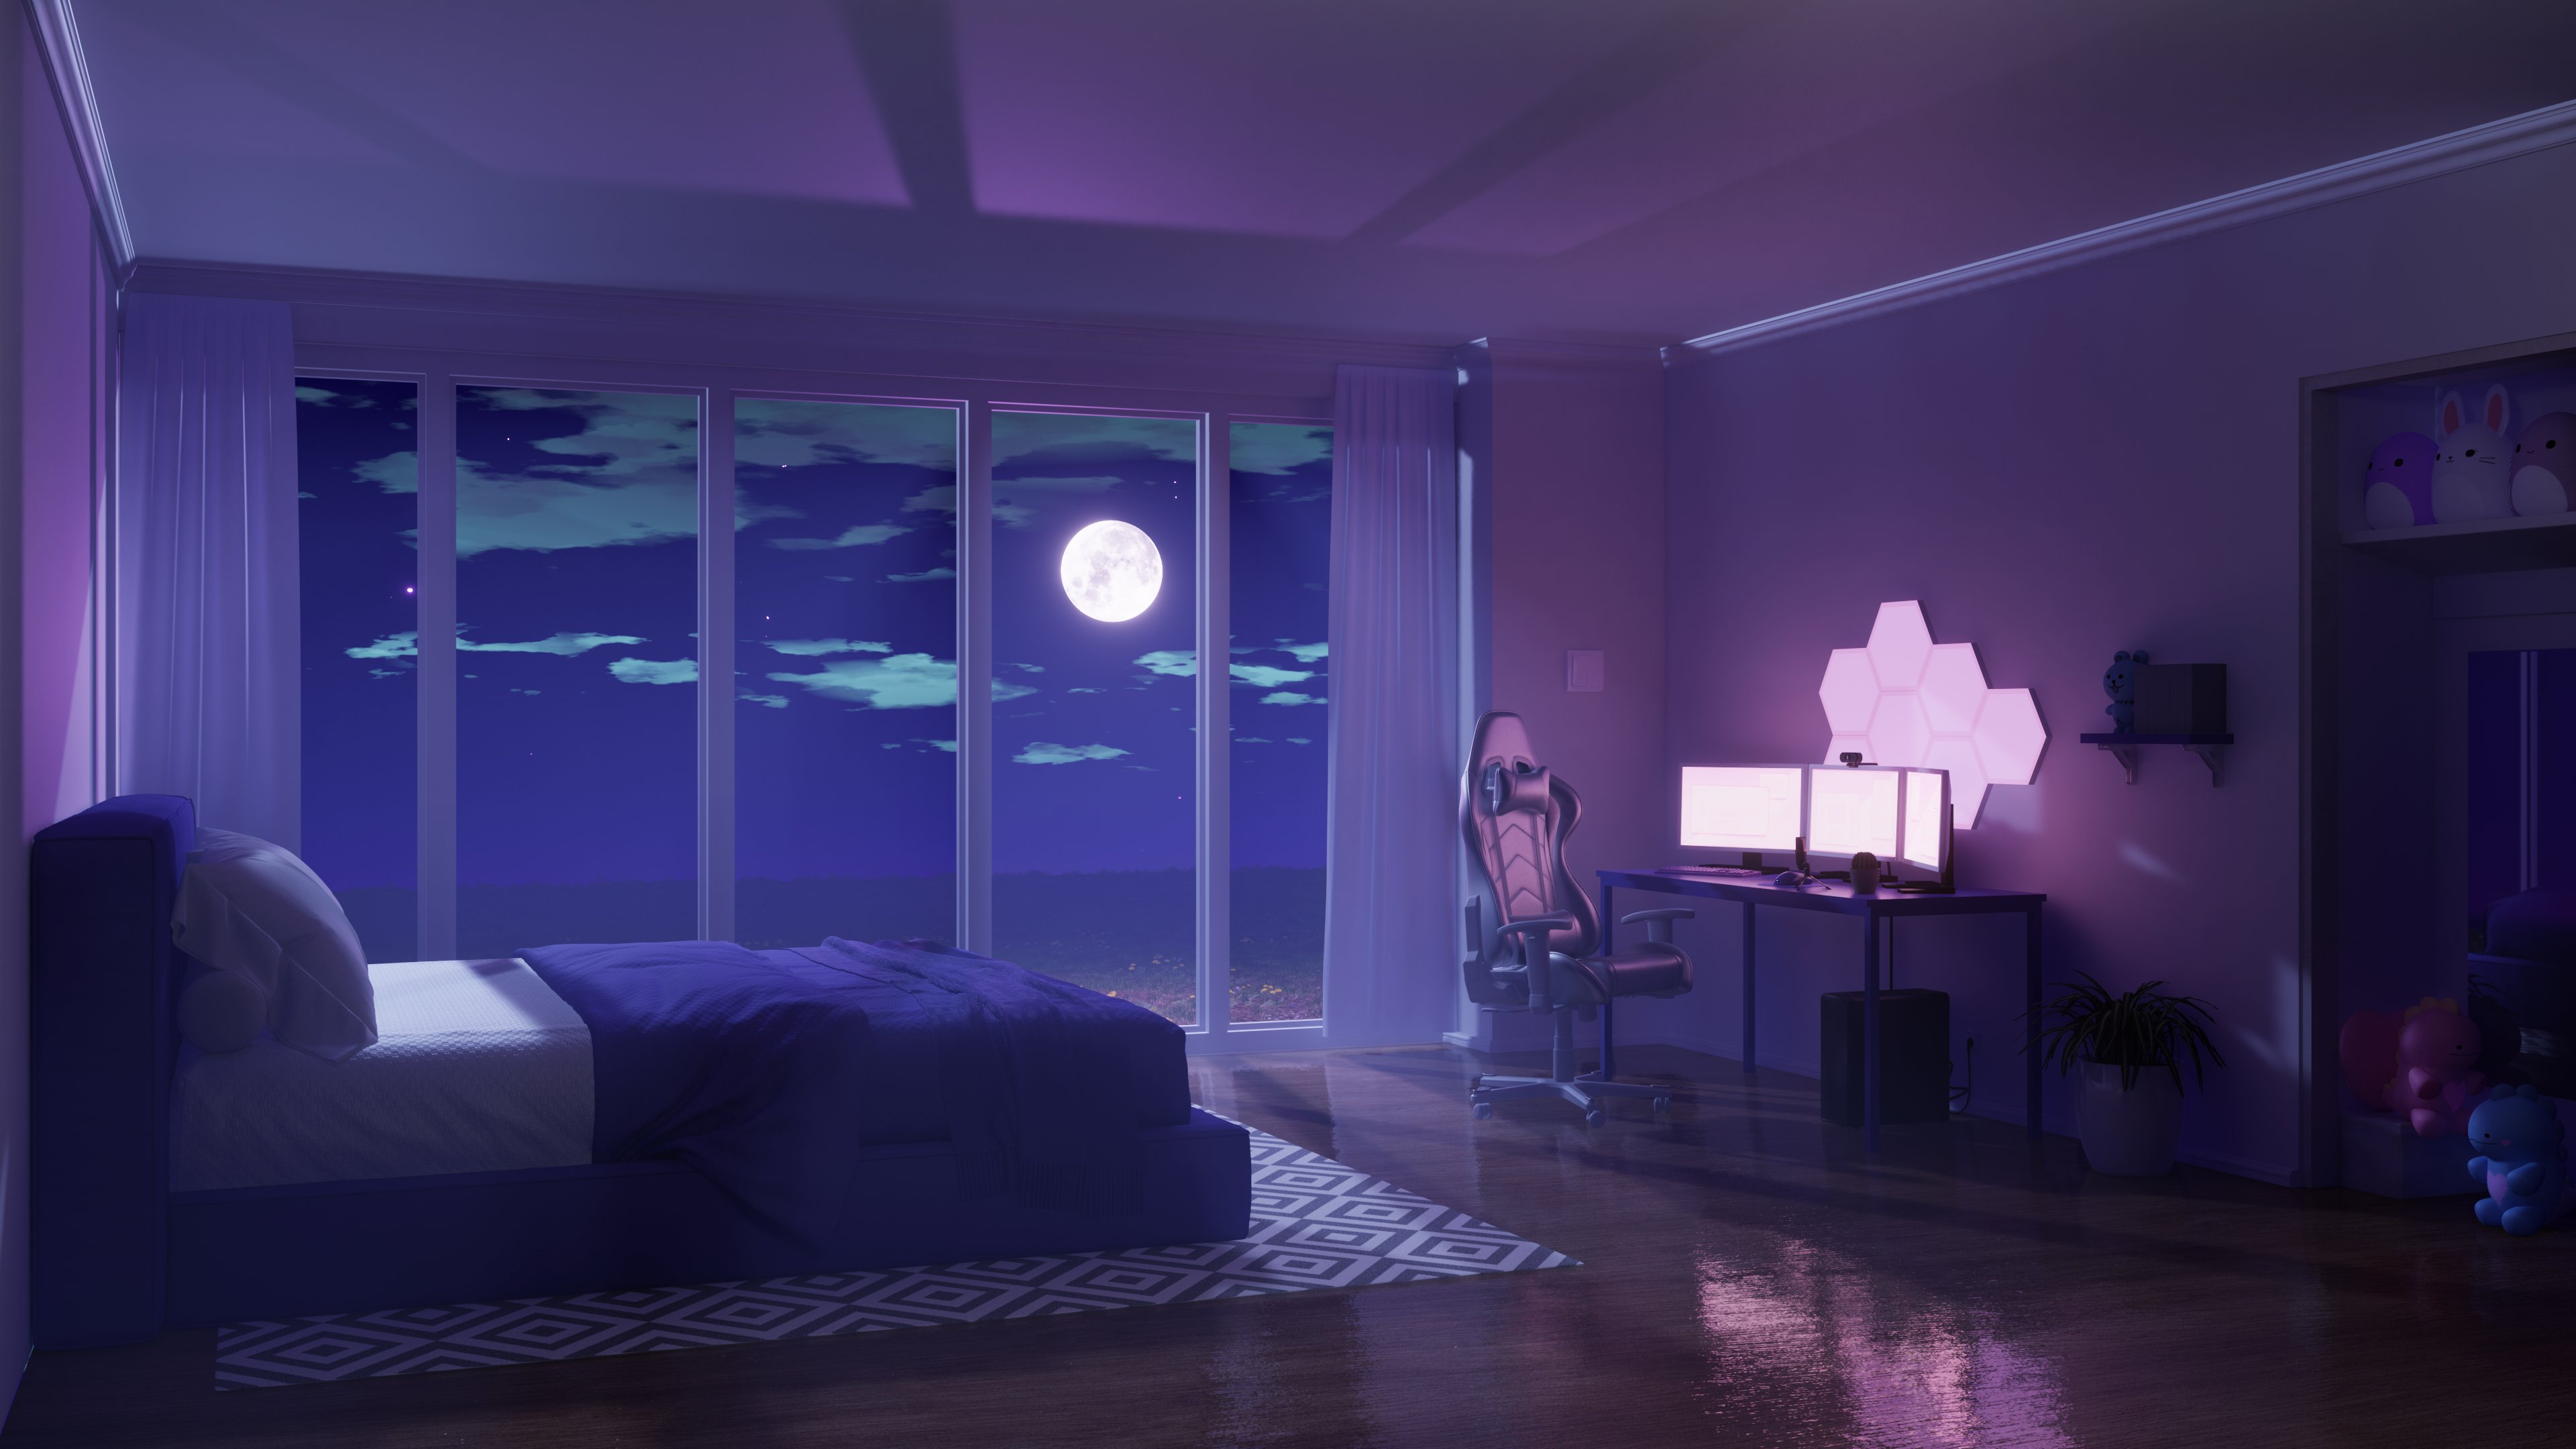 Bạn cảm thấy nhàm chán với phòng ngủ của mình? Giải quyết ngay với trang trí phòng Anime độc đáo! Họa tiết hình ảnh anime sẽ làm cho phòng ngủ của bạn trở nên thú vị và ấn tượng hơn. Hãy xem hình ảnh liên quan để khám phá nguồn cảm hứng mới cho phòng ngủ của bạn.